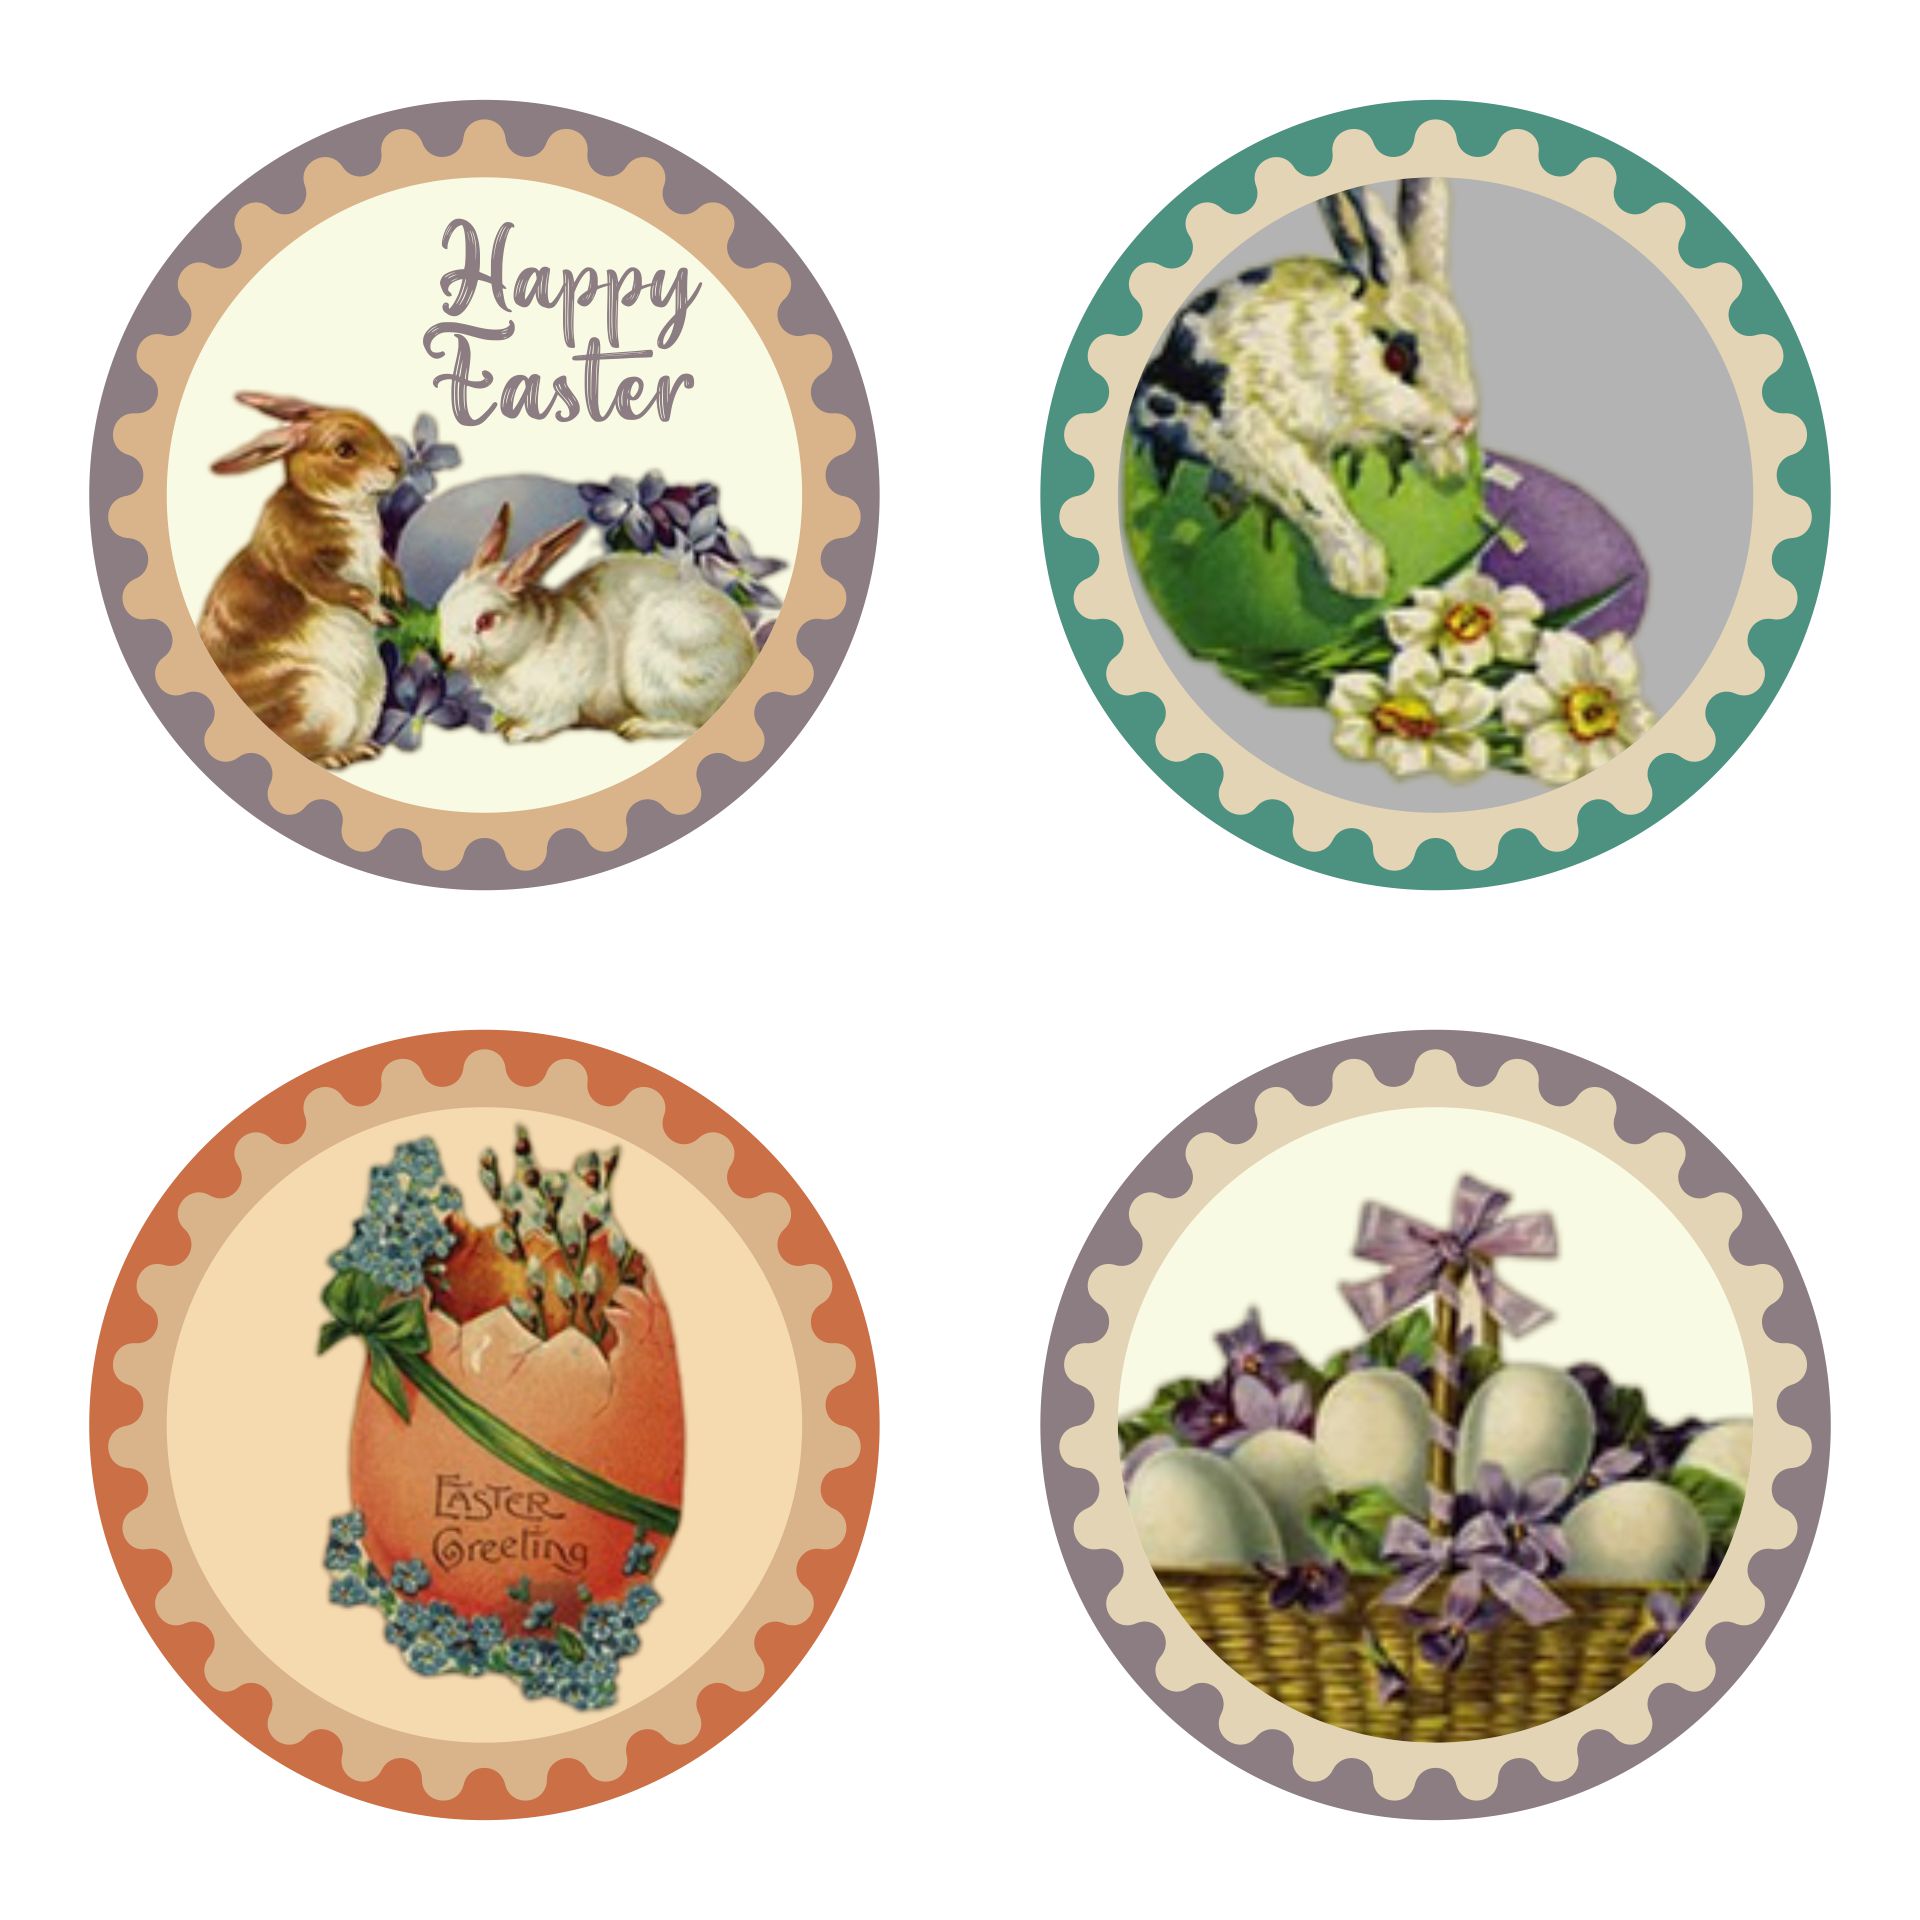 5 Best Images of Free Printable Vintage Easter Cards - Vintage Easter